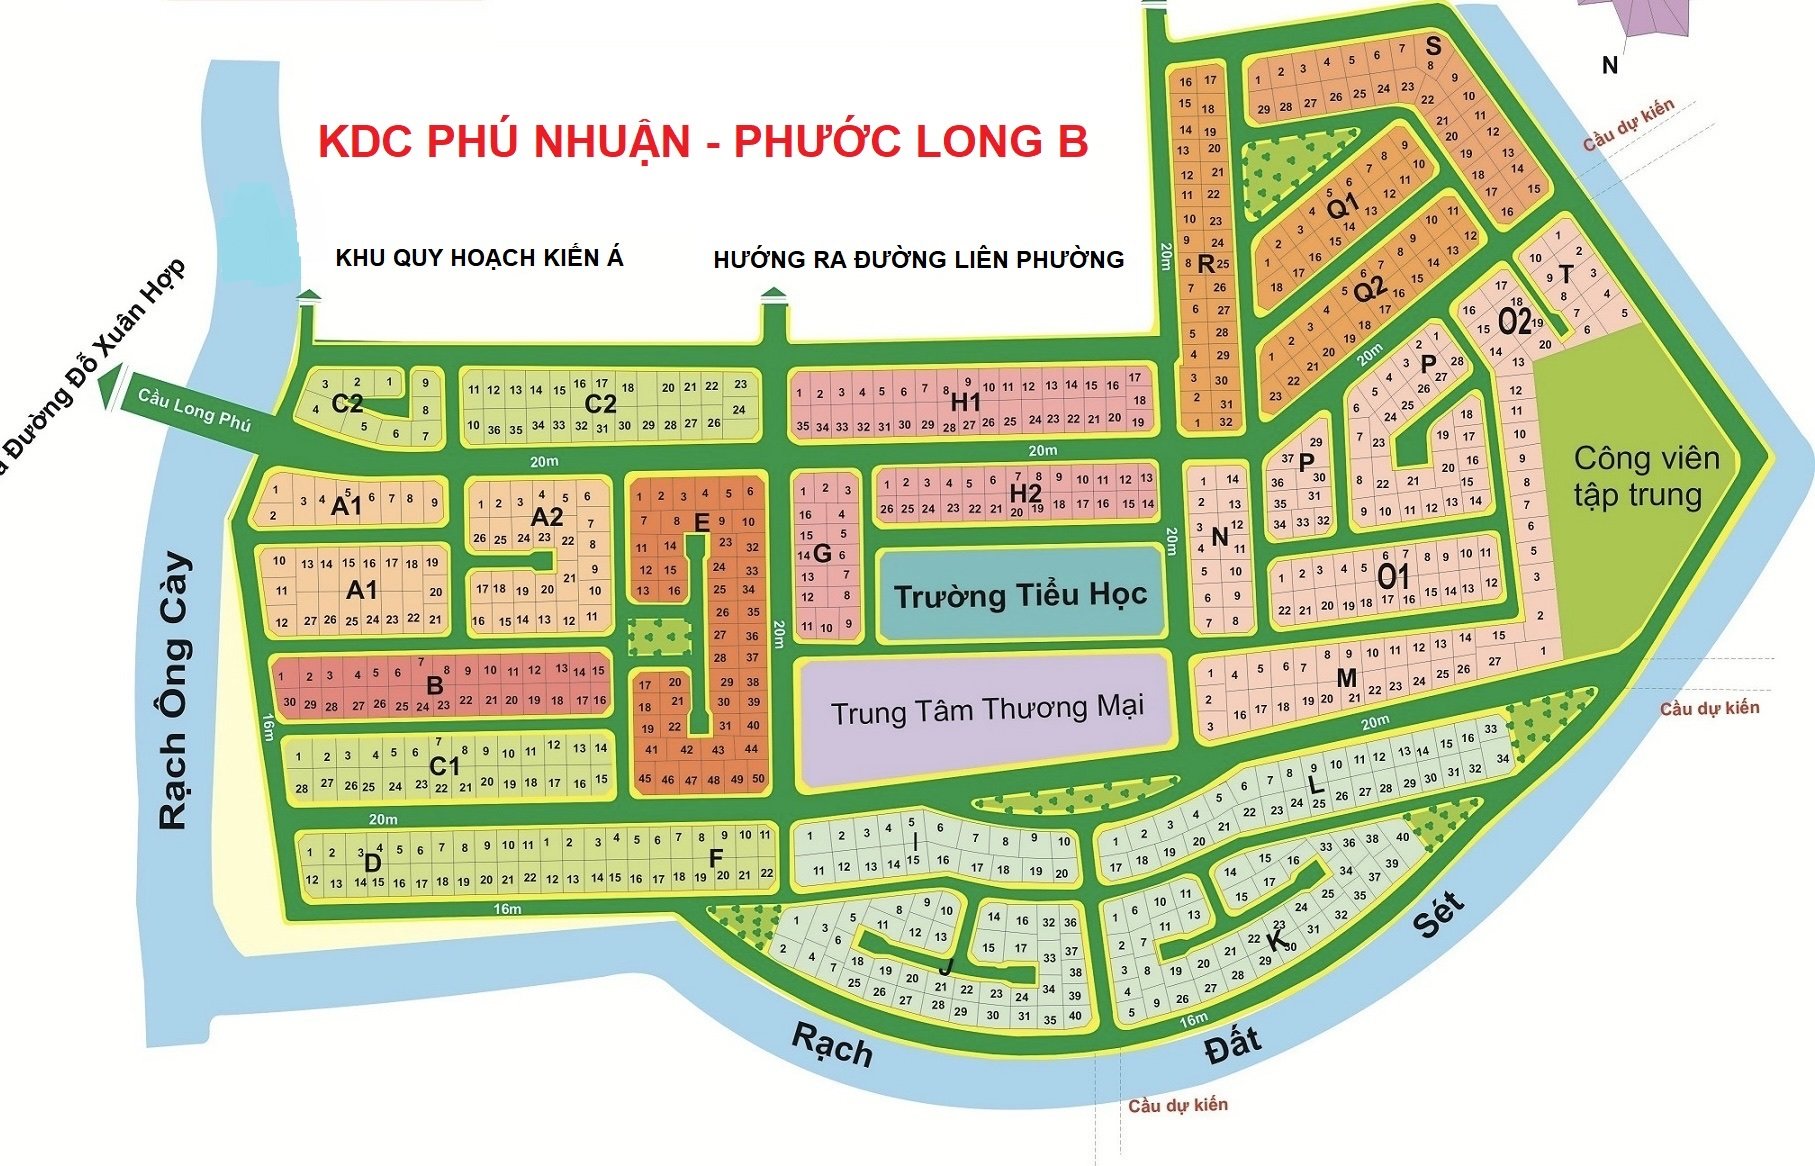 Chủ cần bán đất nền KDC Phú Nhuận, DT 270m2, giá 70tr/m2, đón nắng, phường PLB, TP.Thủ đức 1